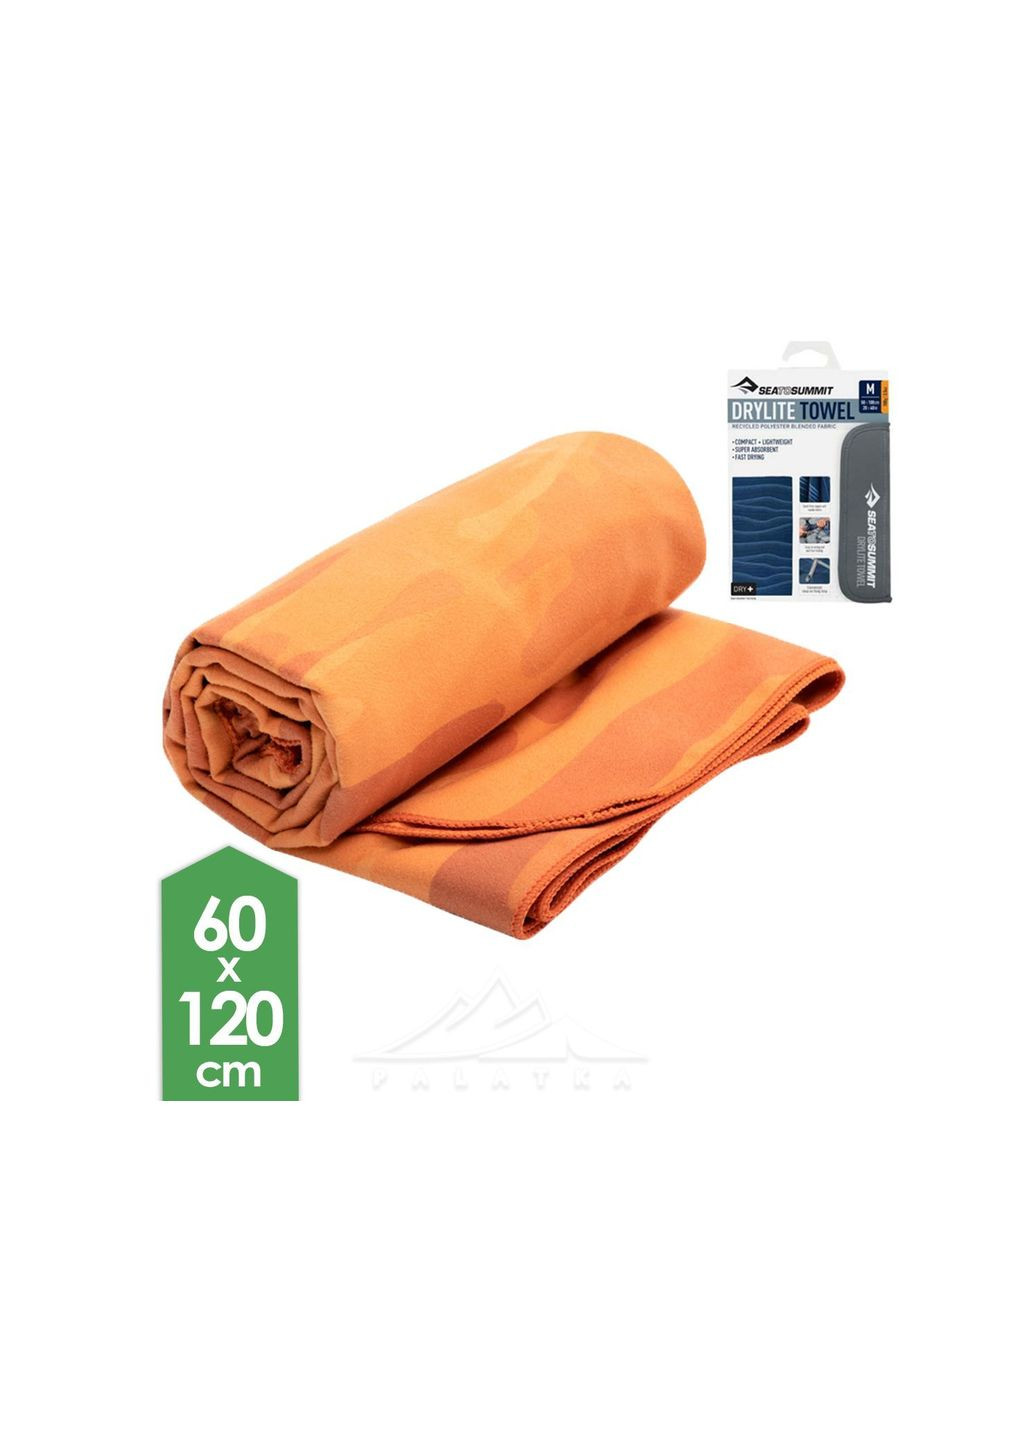 Sea To Summit полотенце drylite towel l оранжевый производство -